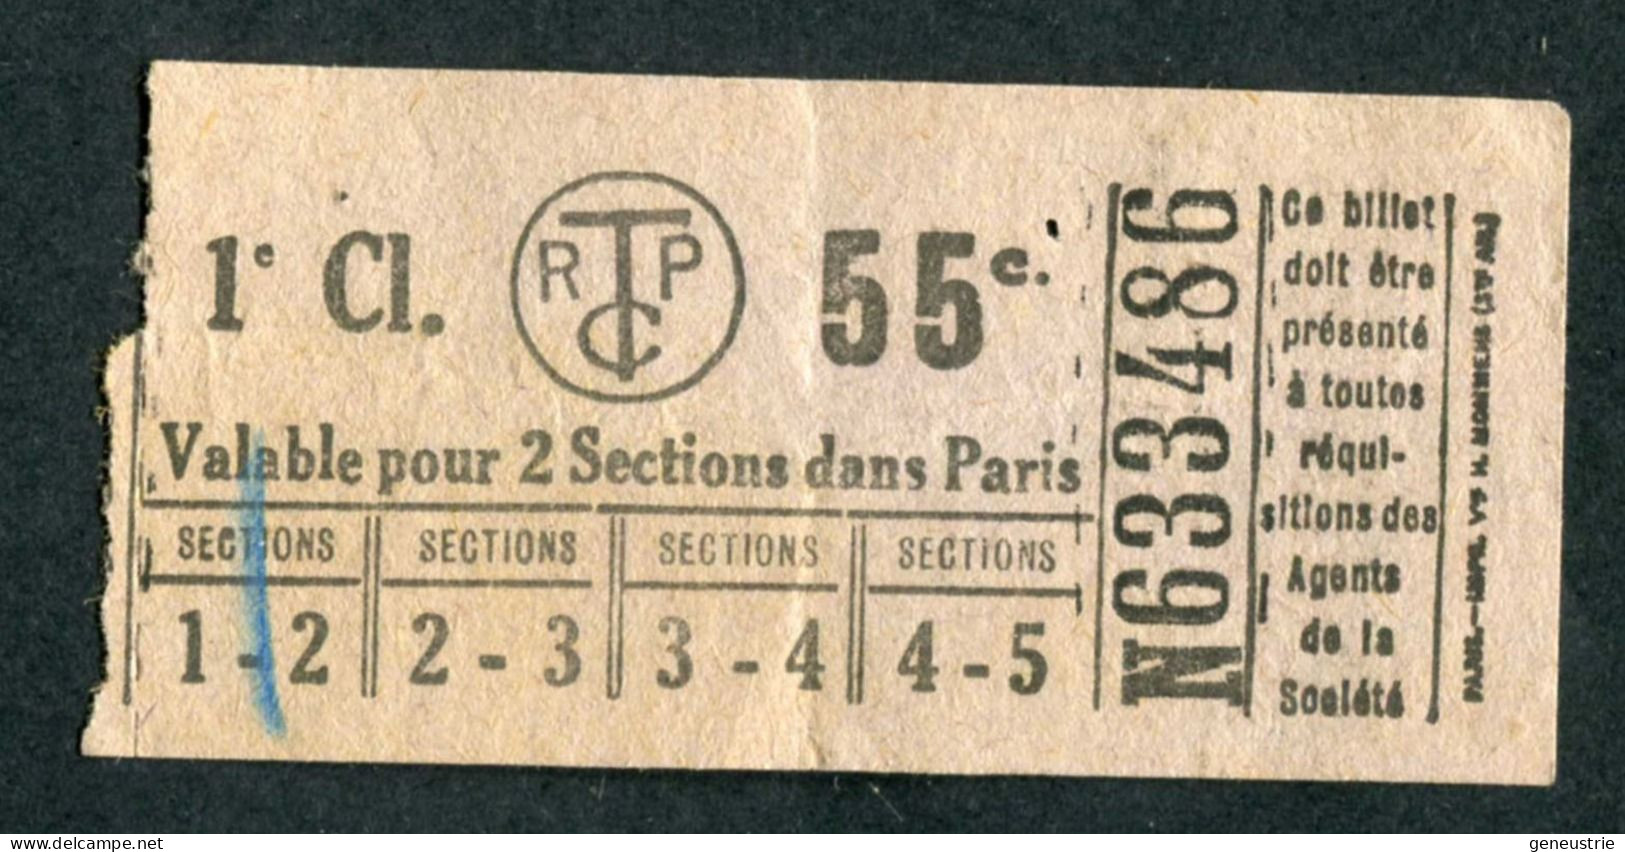 Ticket De Tramways Parisiens 1921 à 1938 (STCRP) 1e Classe 55c - Paris" Tramway - Tram - Europa